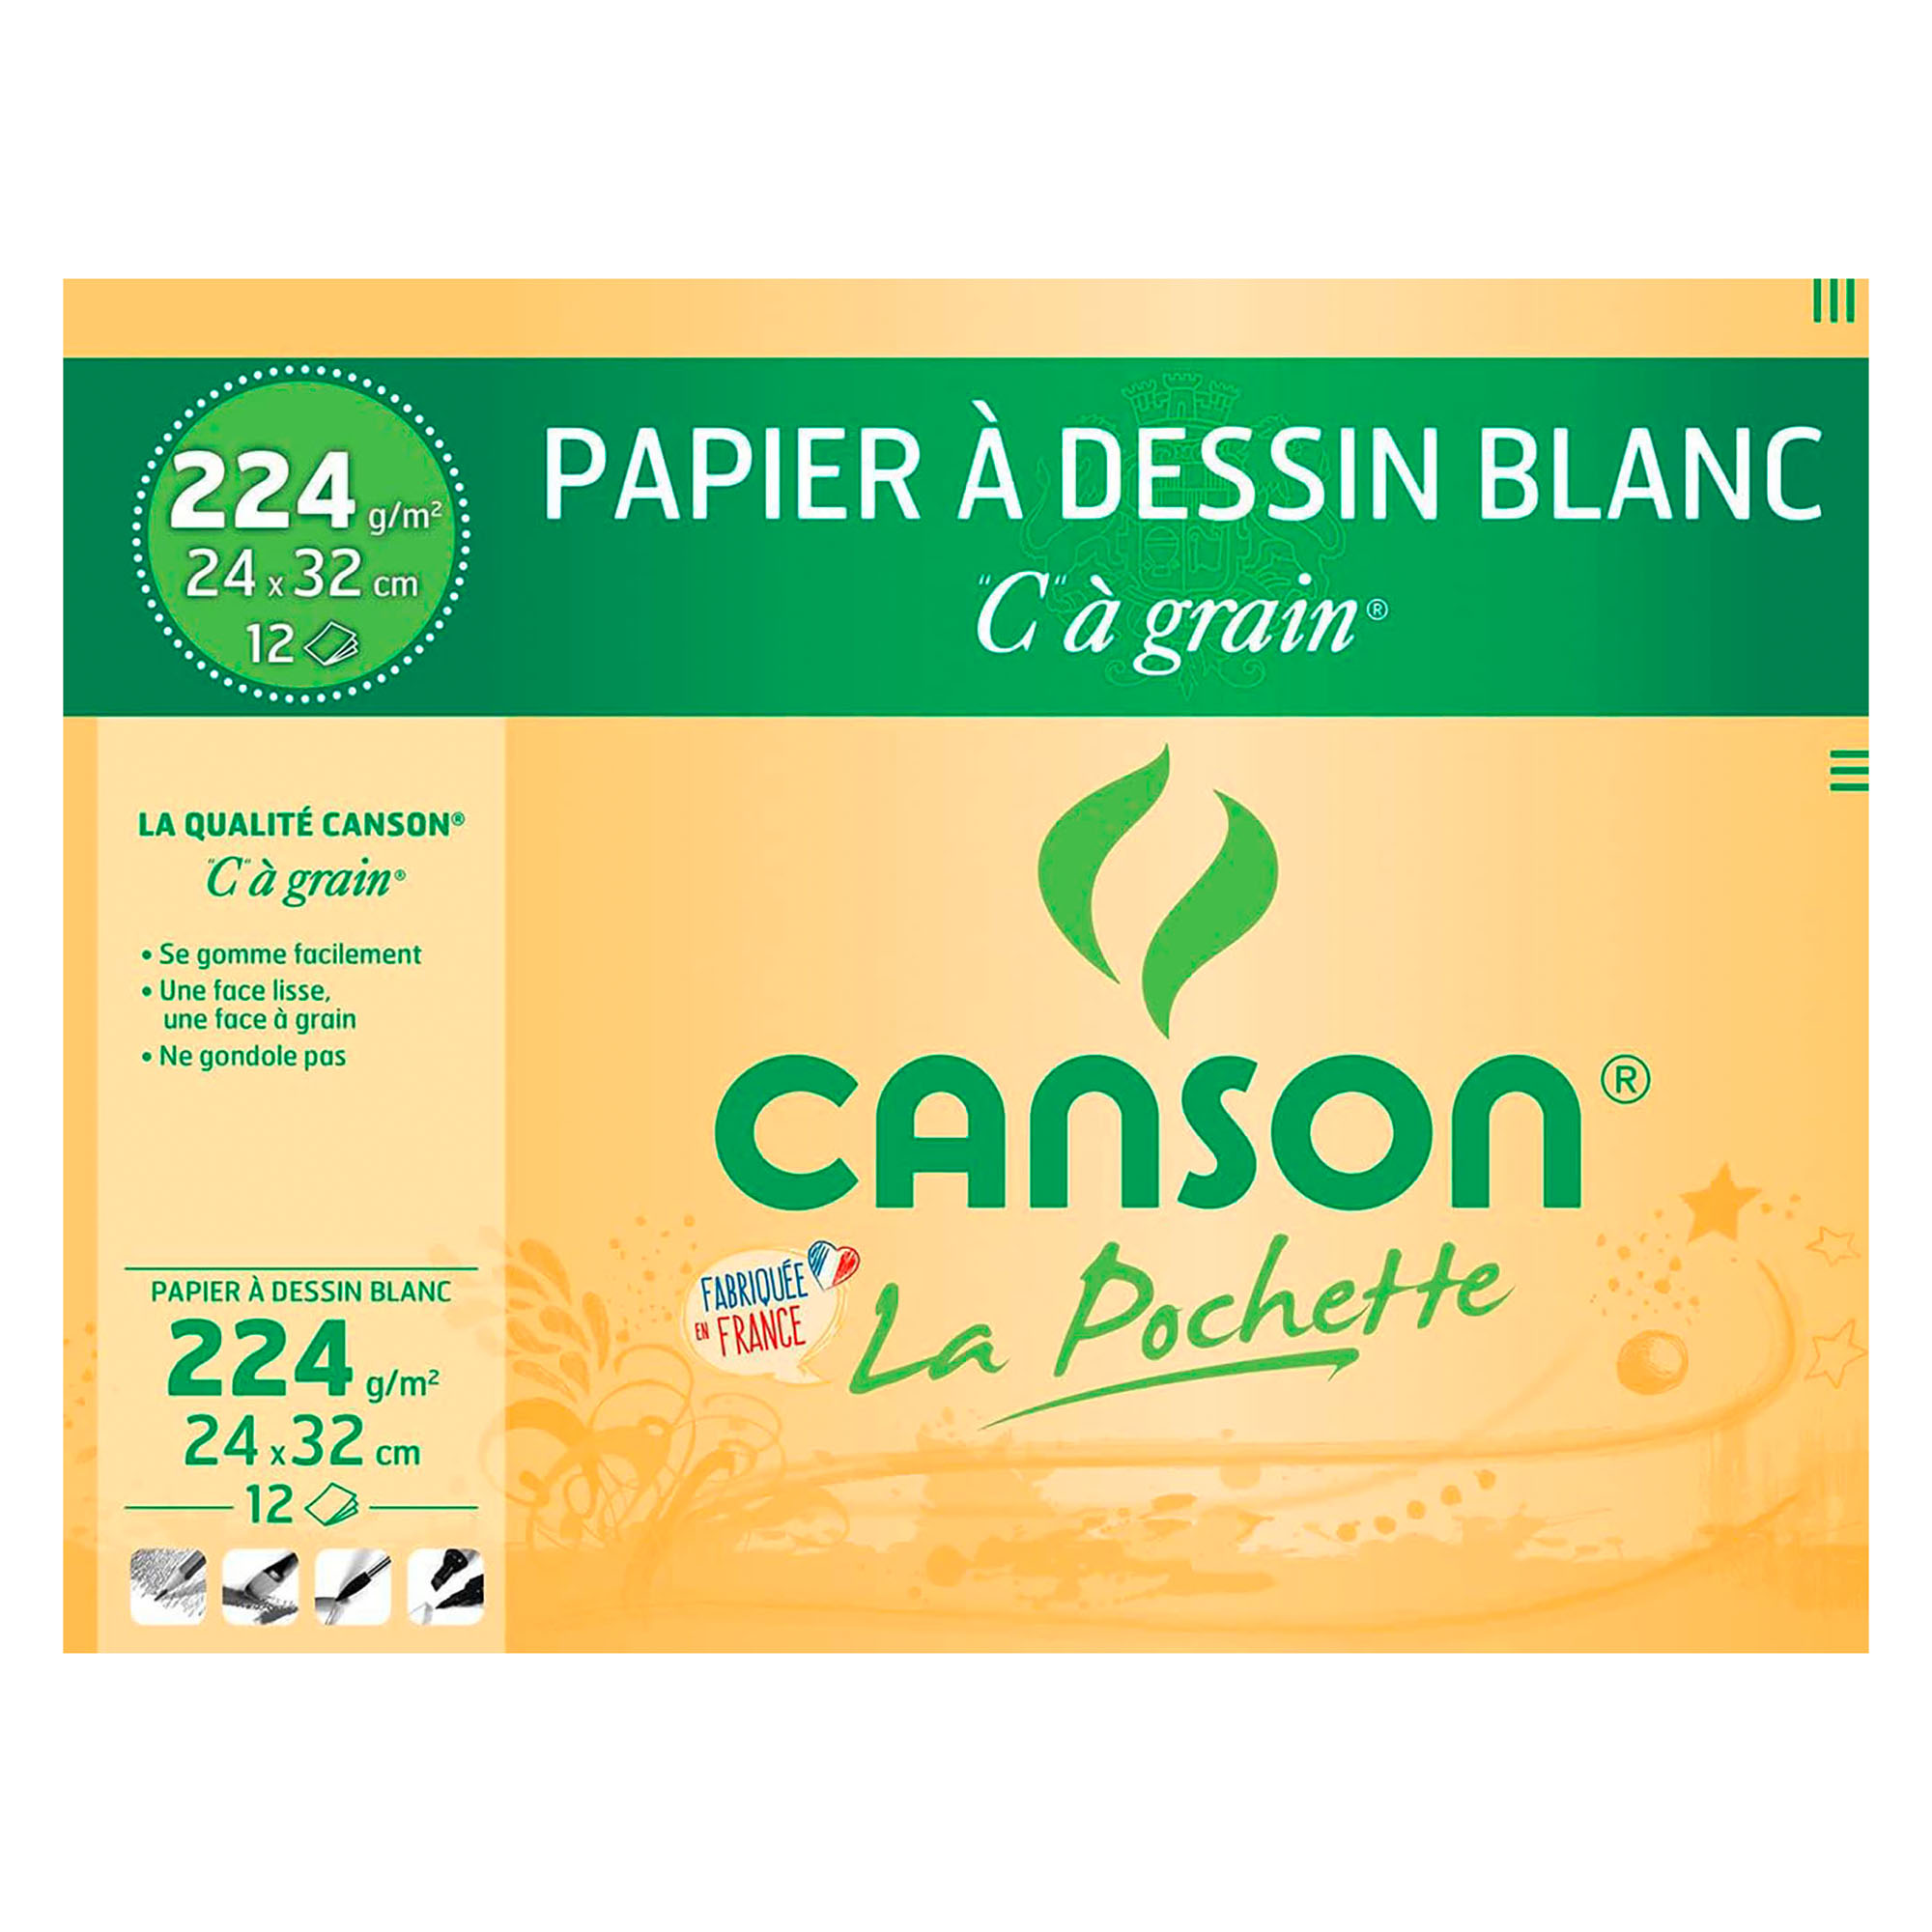 Pochette CANSON de 12 feuilles papier création A4 couleurs pastel